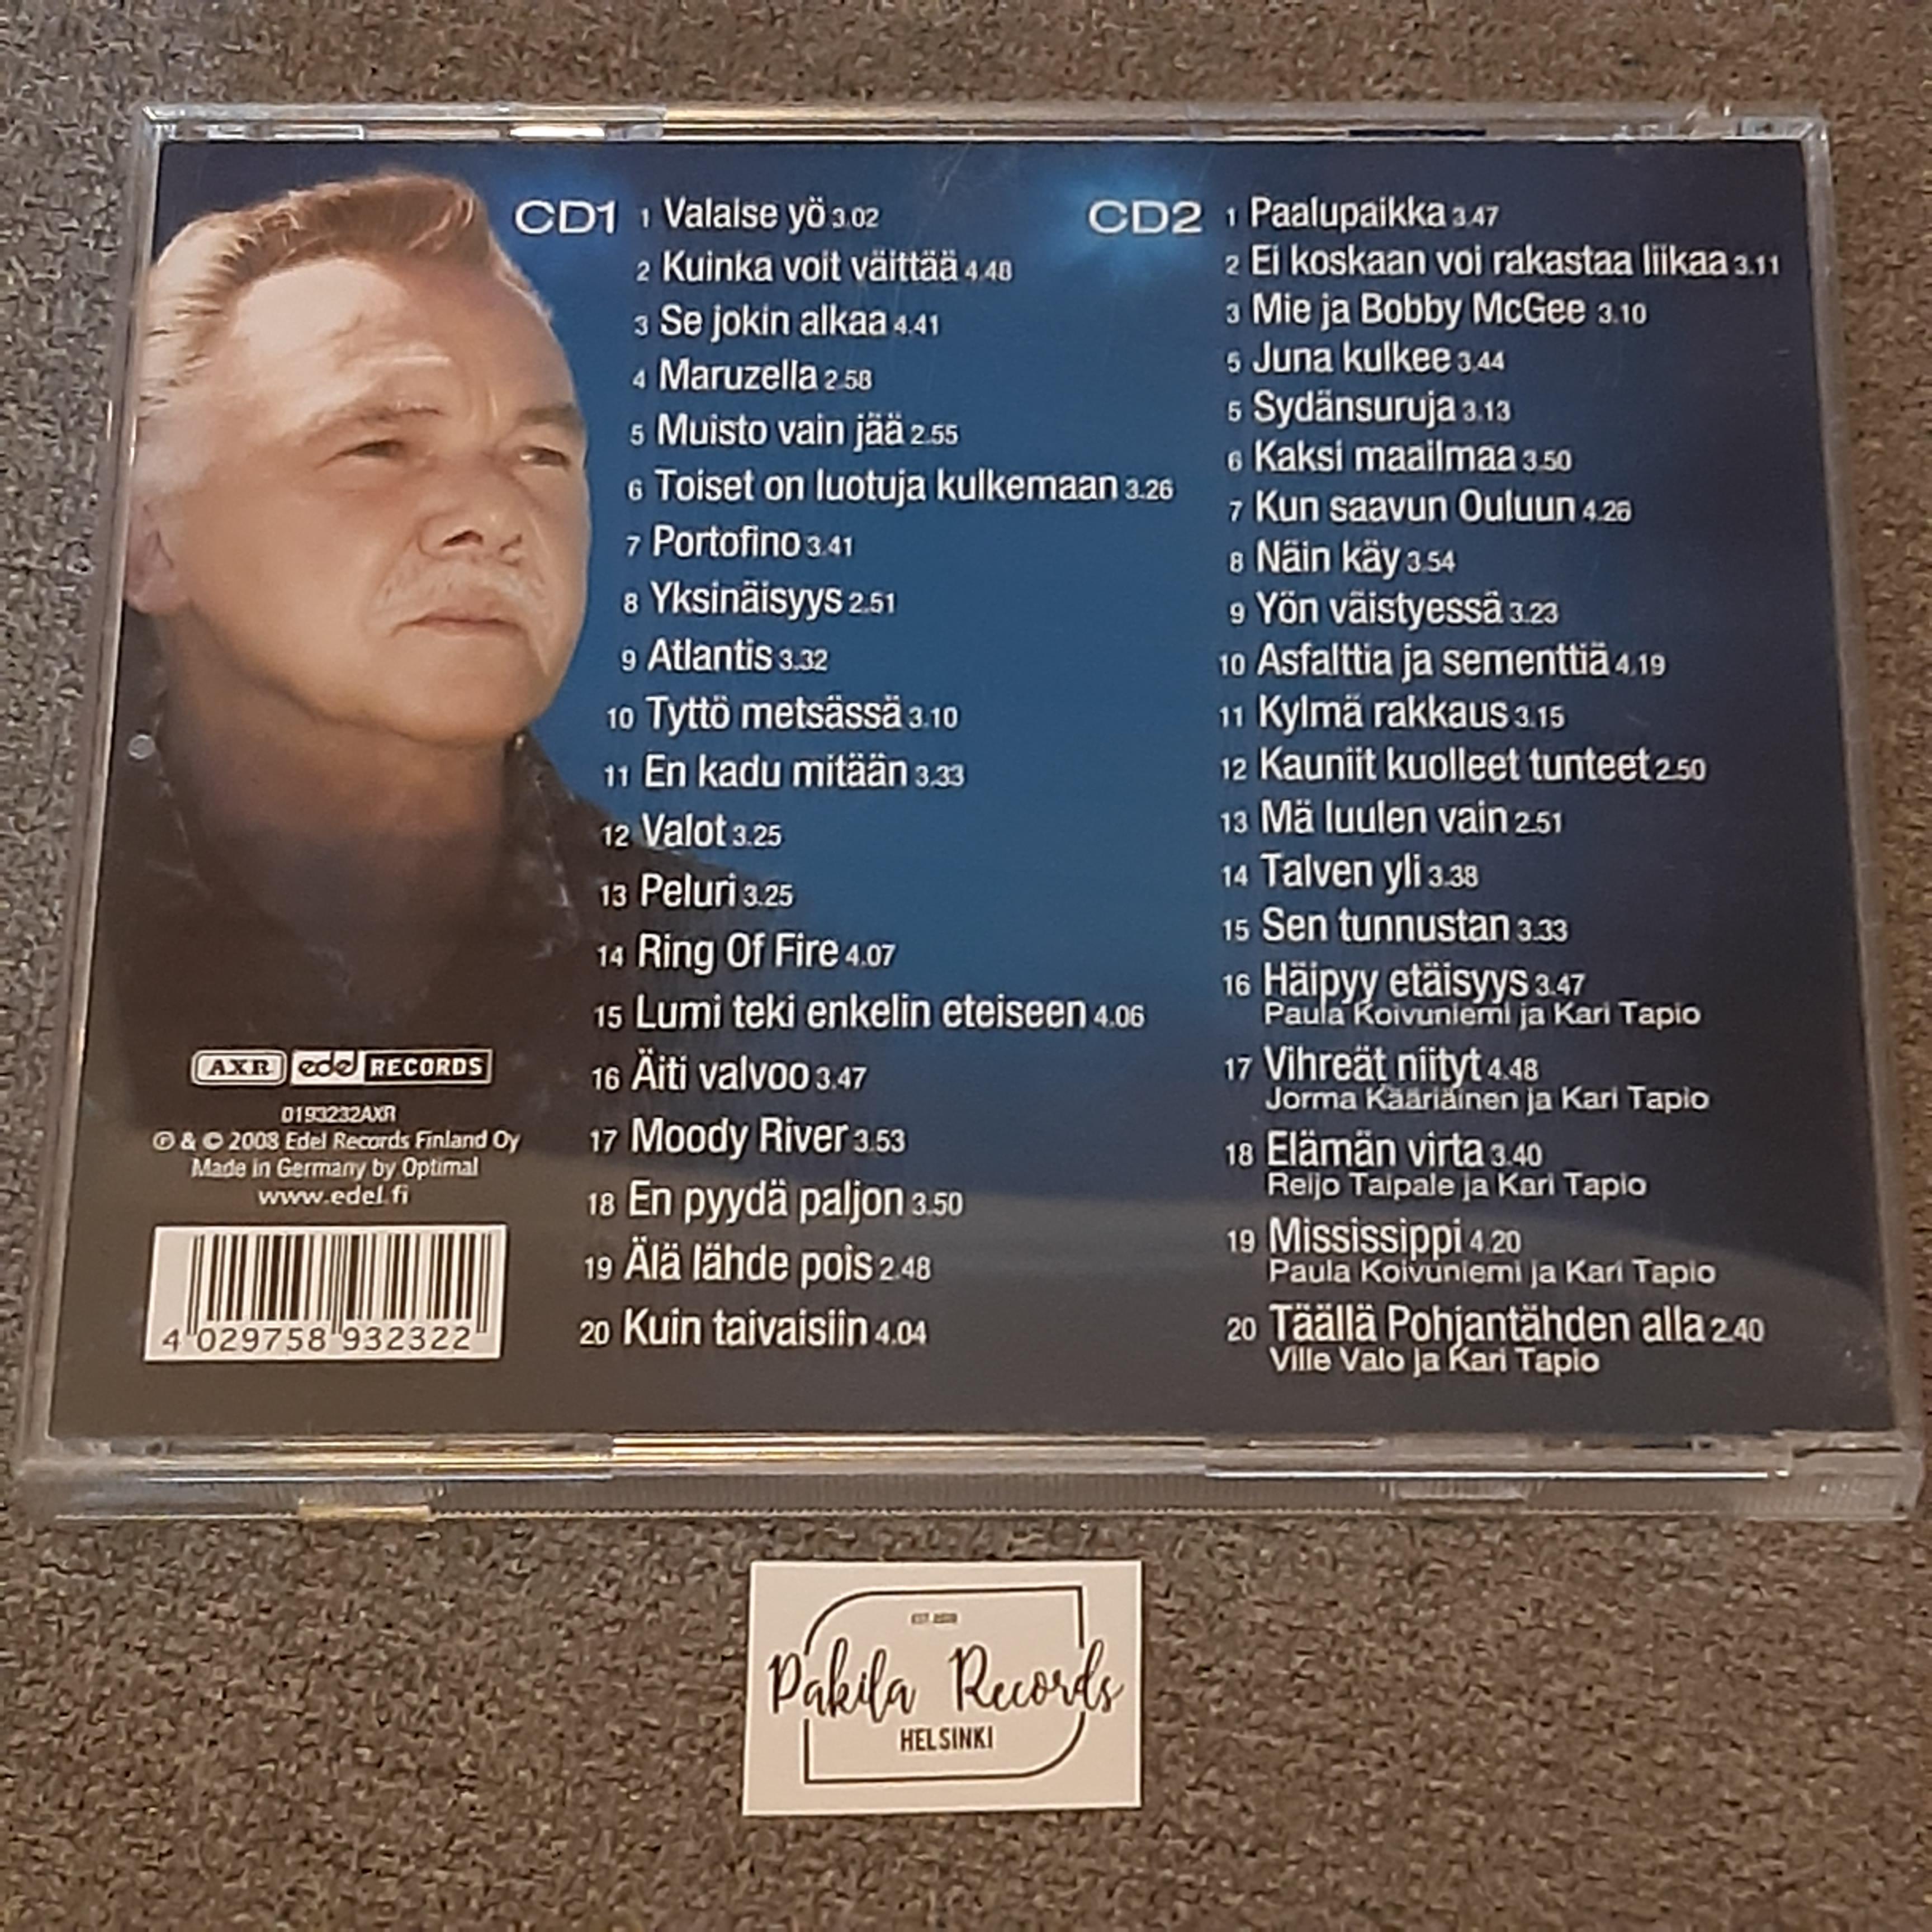 Kari Tapio - Kaikkien aikojen parhaat Vol.2 - 2 CD (käytetty)